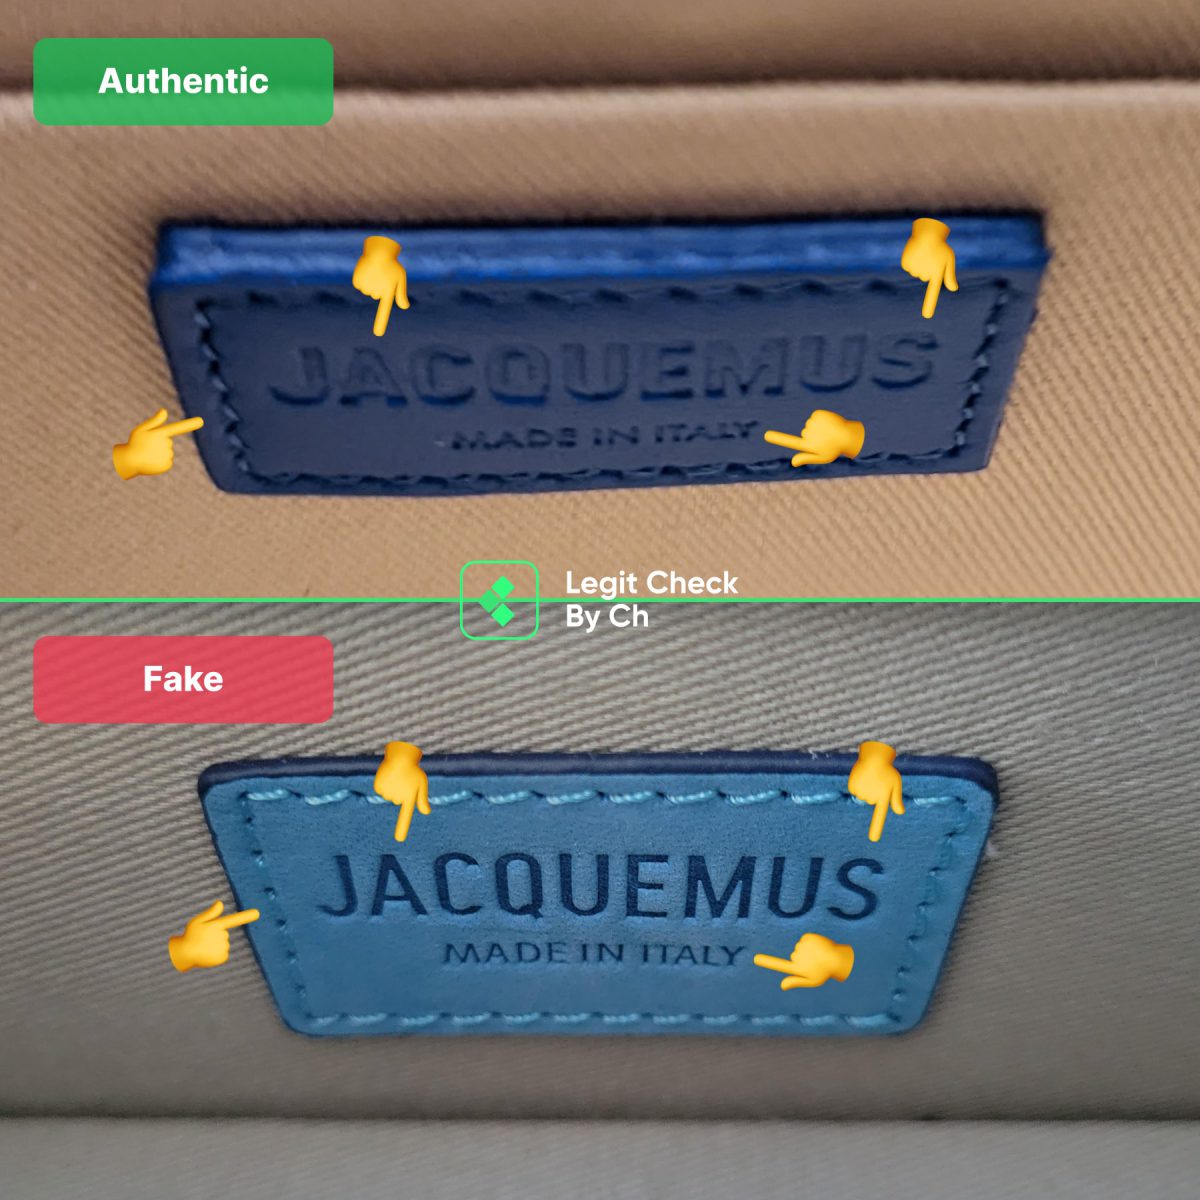 Jacquemus Bag Fake Vs Real Label